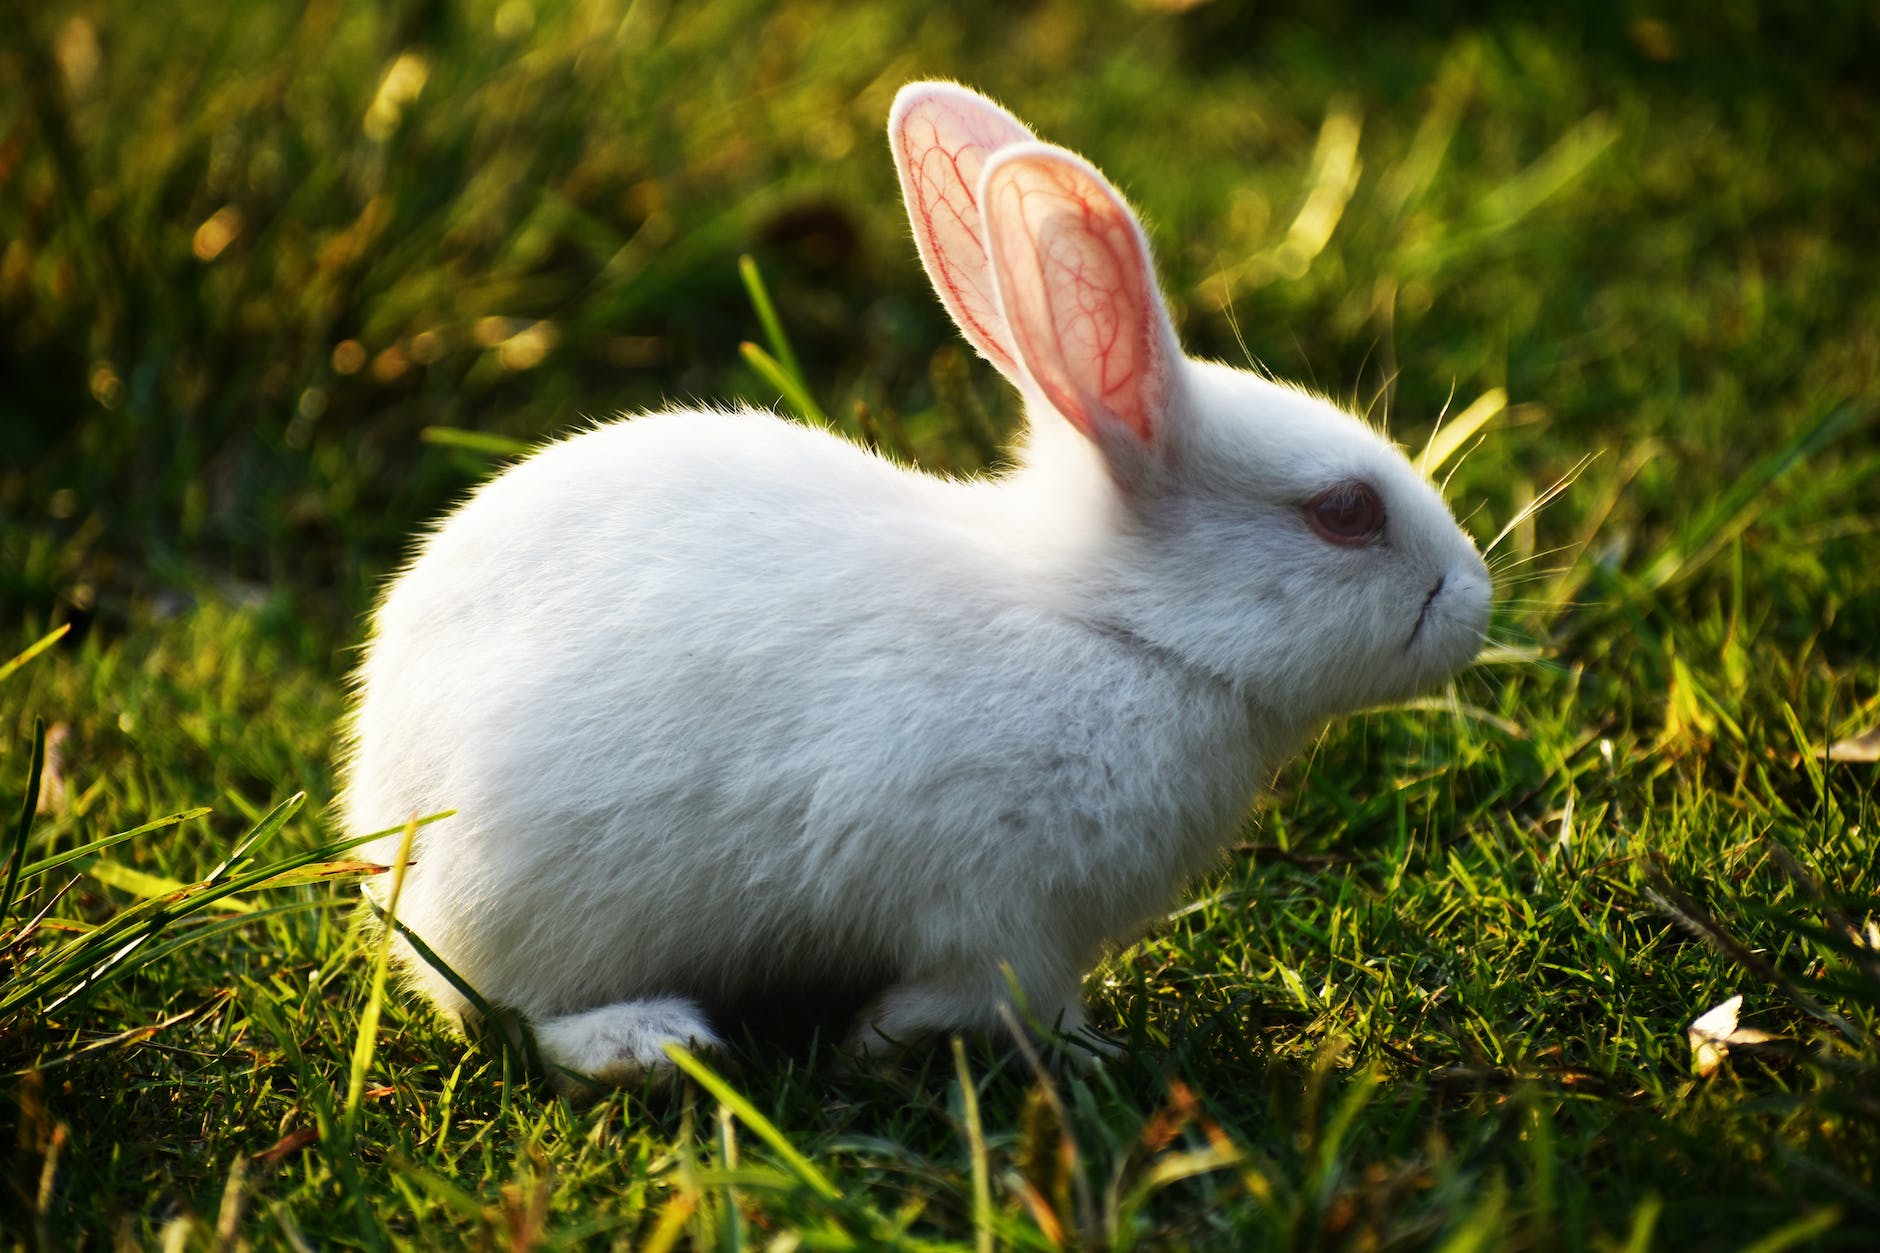 Significado espiritual del conejo que se cruza en tu camino –